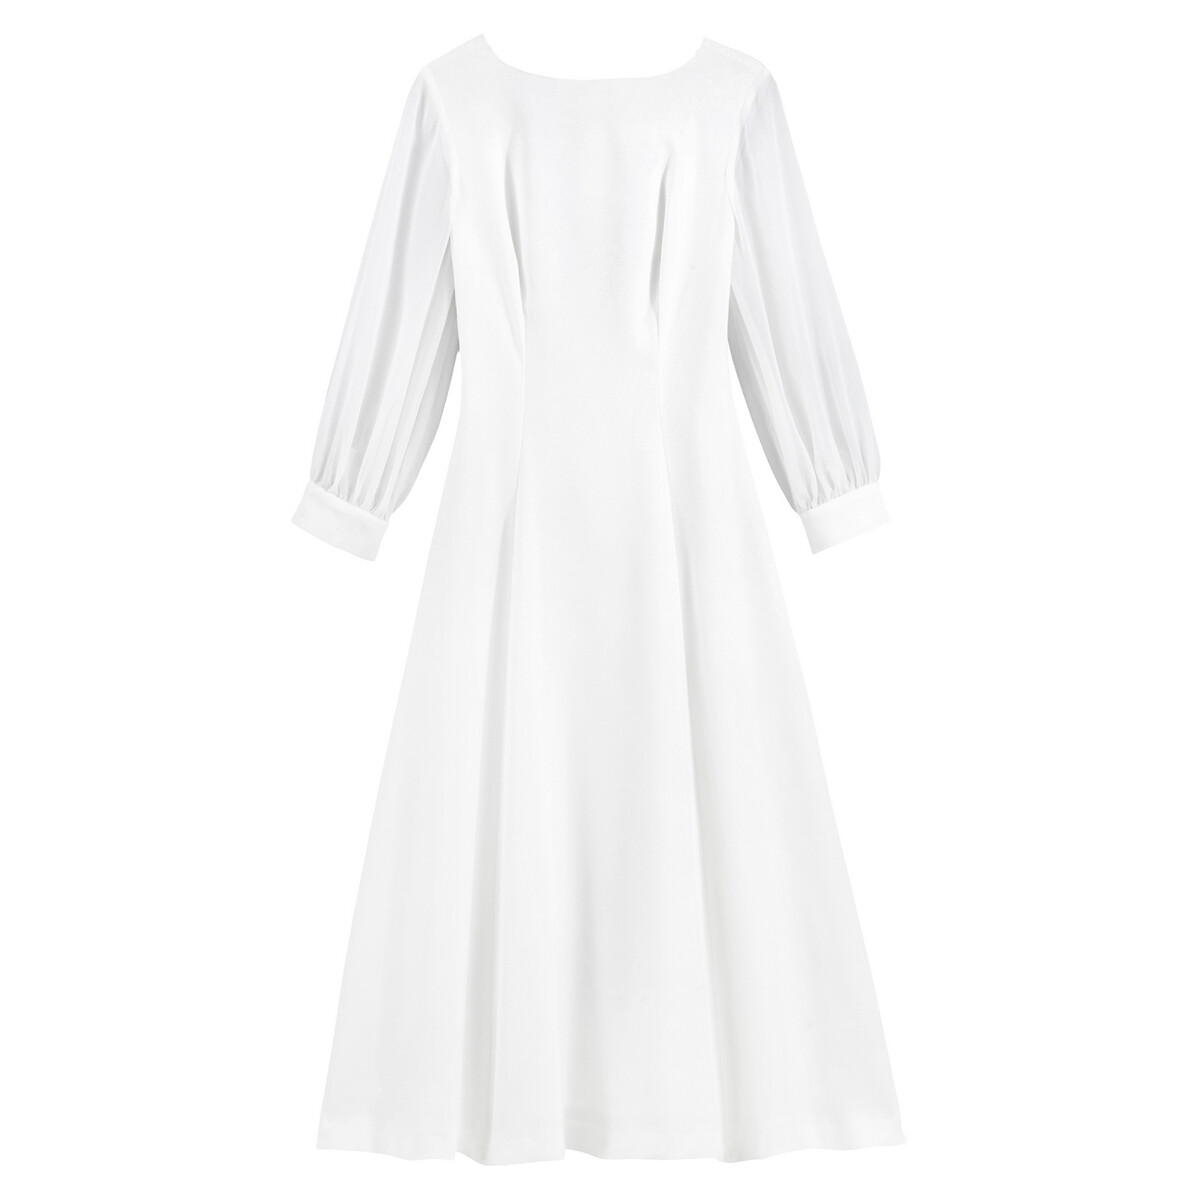 Платье La Redoute Невесты длинное V-образное декольте 46 (FR) - 52 (RUS) белый, размер 46 (FR) - 52 (RUS) Невесты длинное V-образное декольте 46 (FR) - 52 (RUS) белый - фото 5